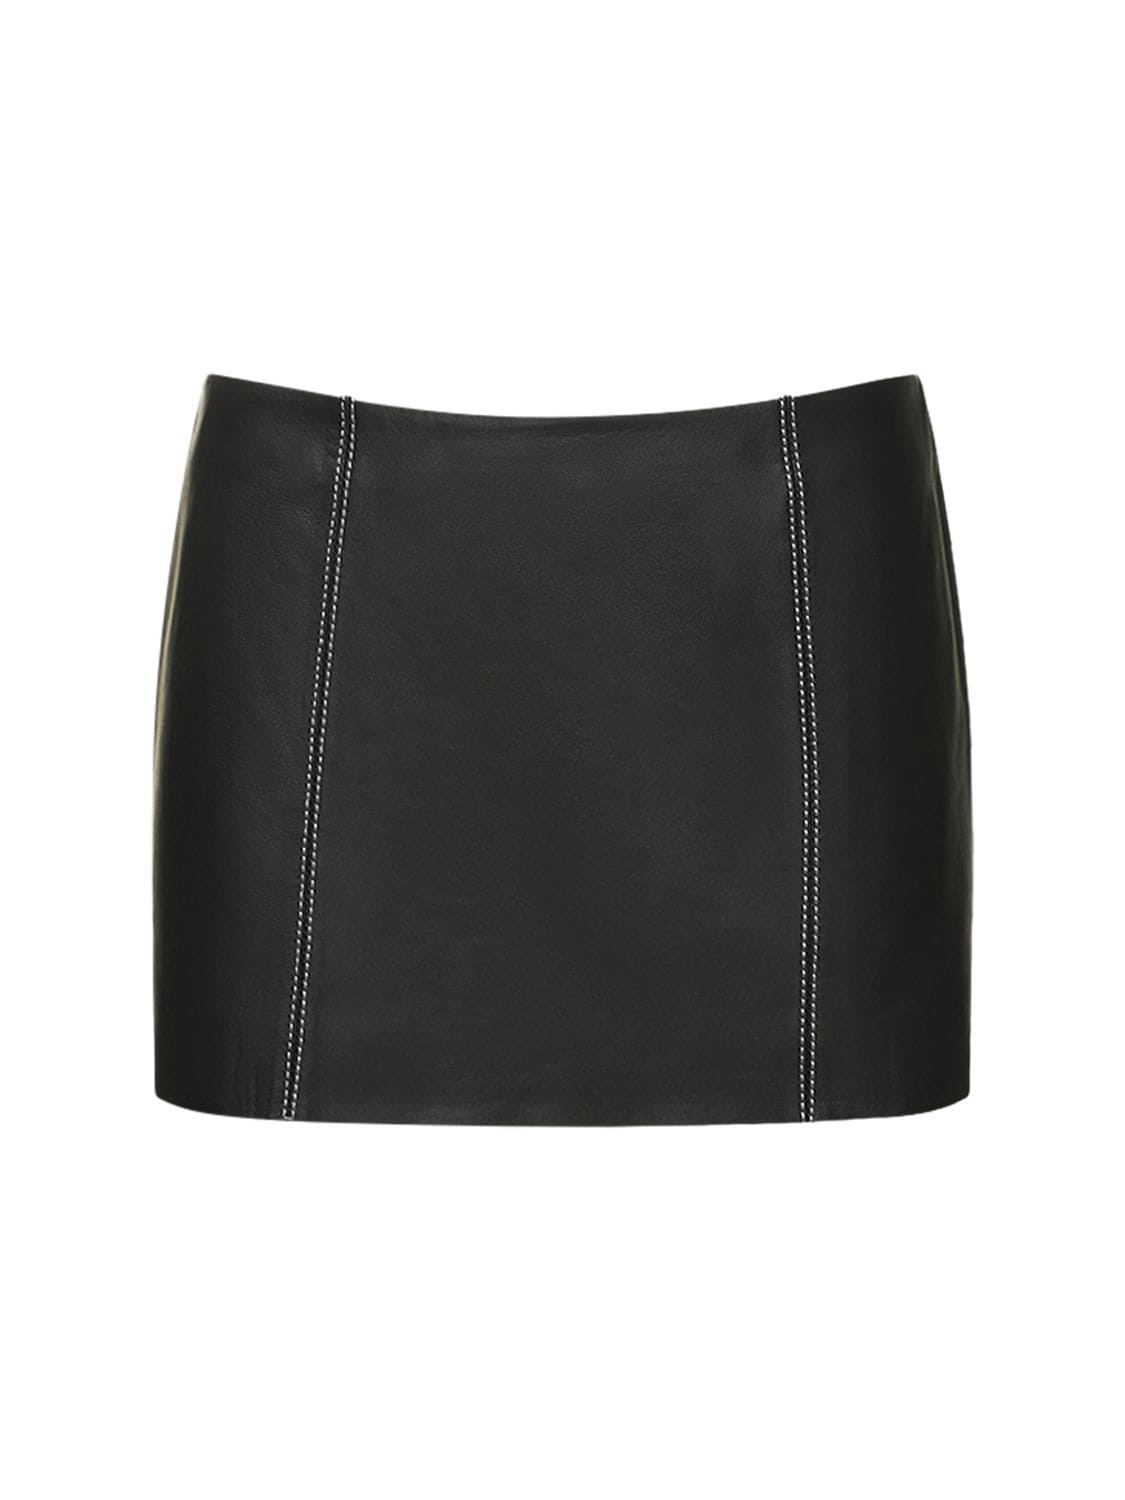 Reformation Veda Veranda Low Rise Leather Mini Skirt In Black